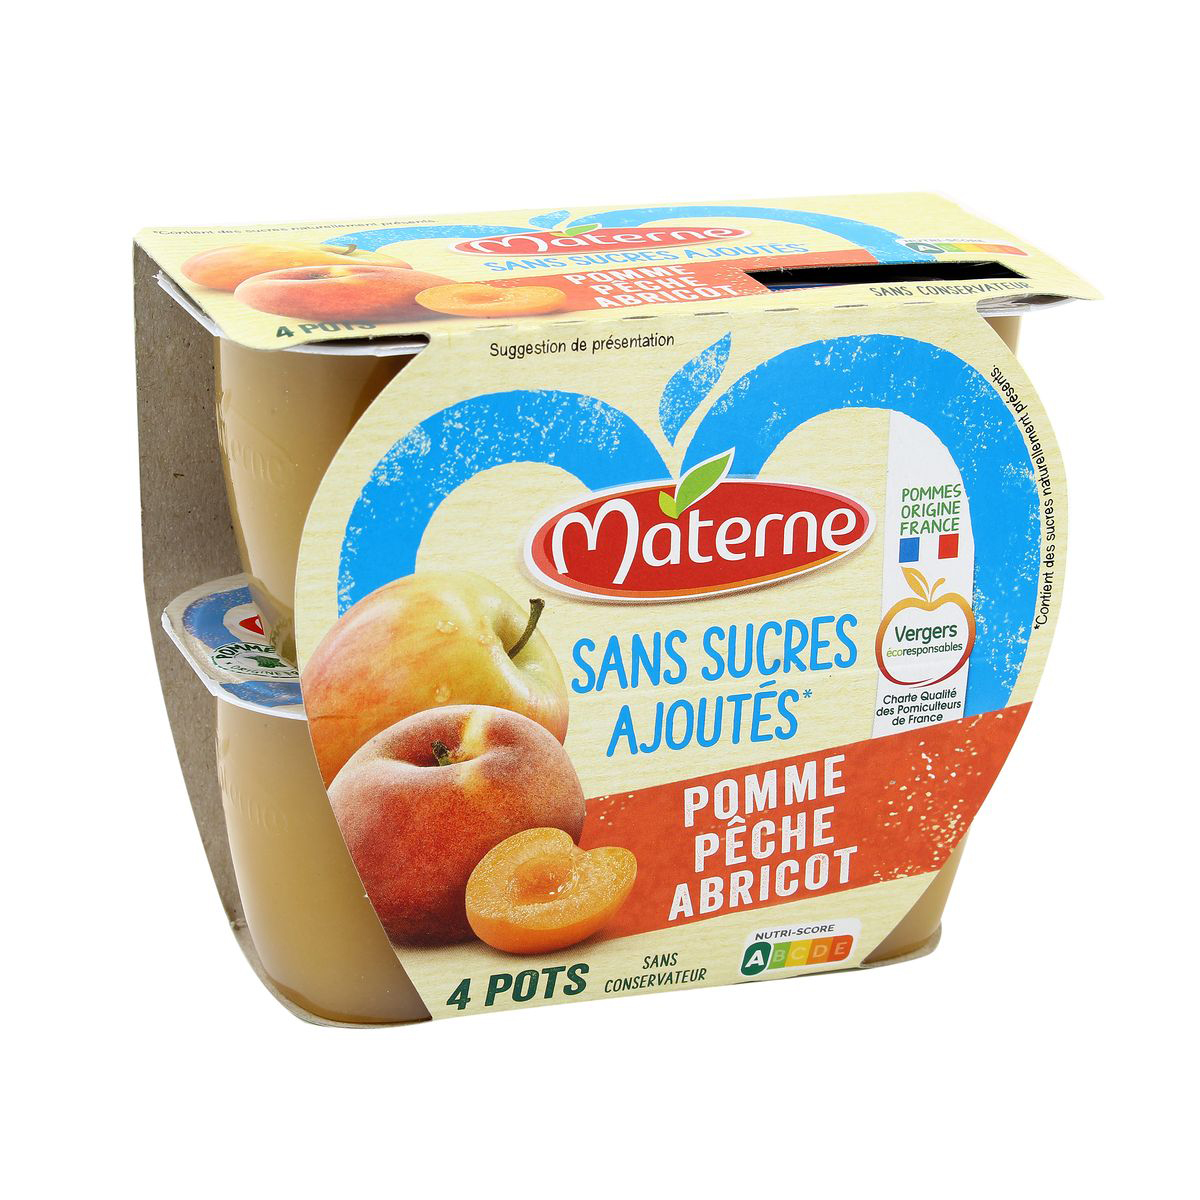 Acheter Materne Purée pomme pêche abricot sans sucre ajoutés, 4X100g